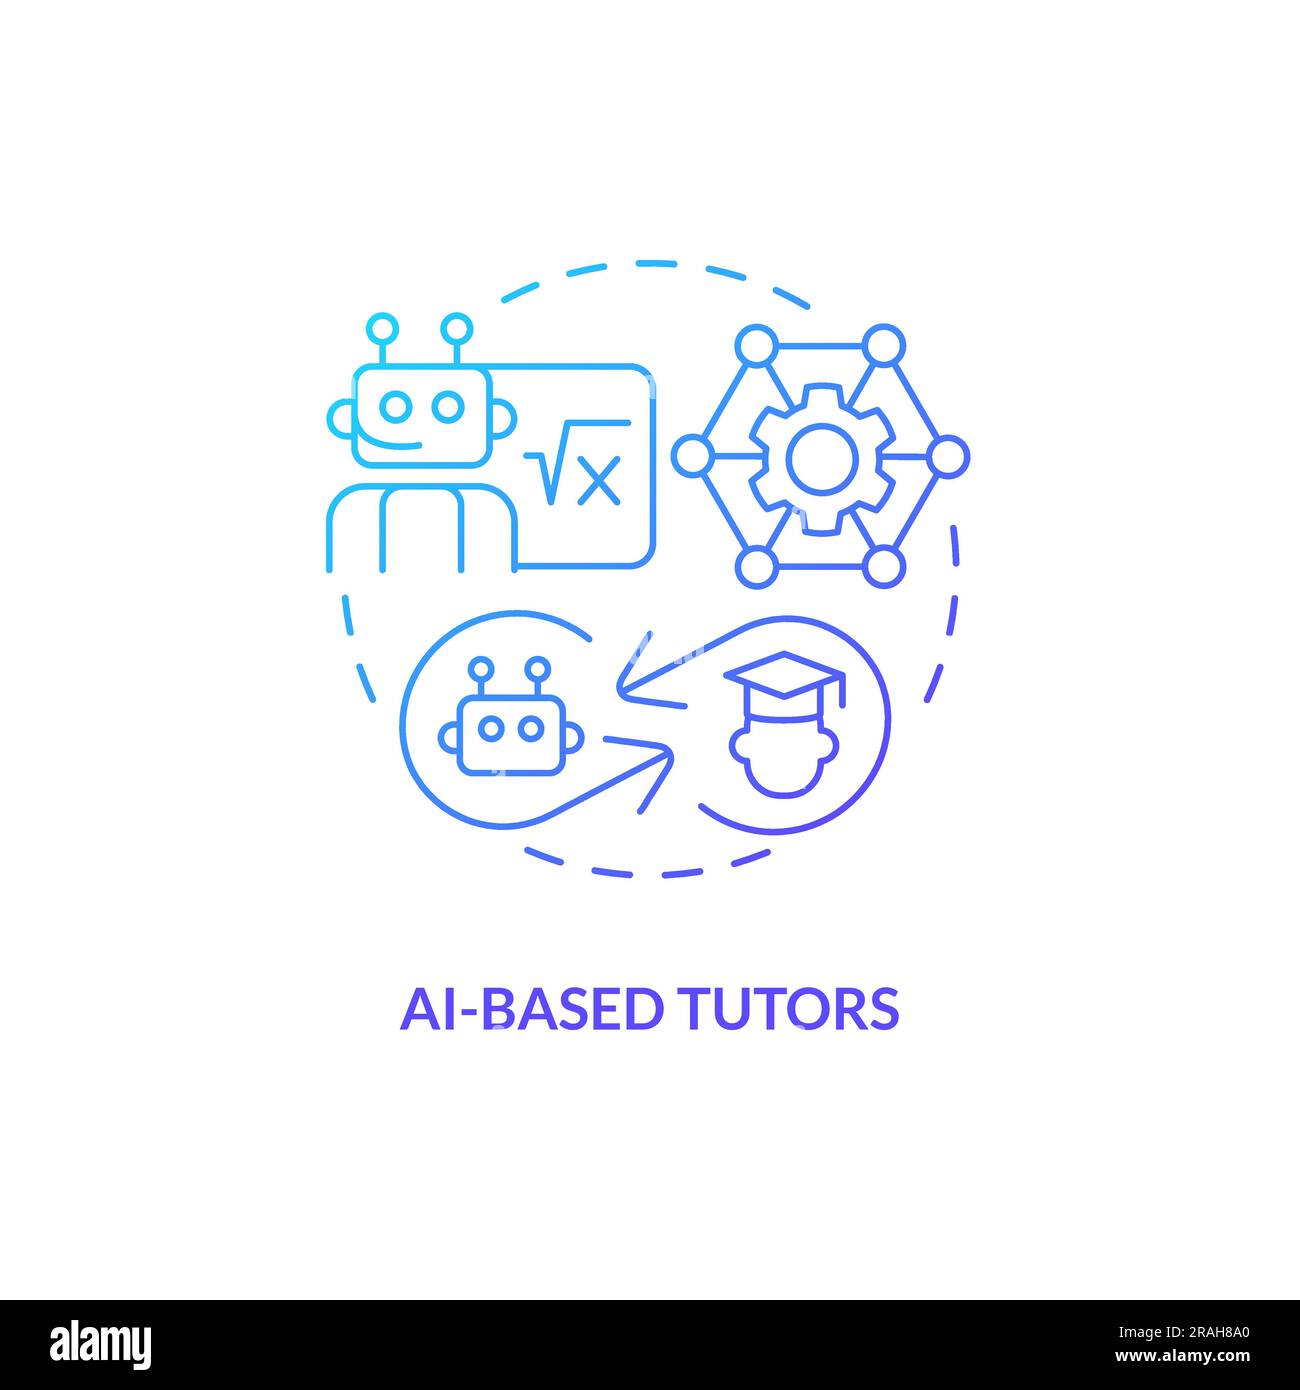 AI-based tutors concept icon Stock Vector